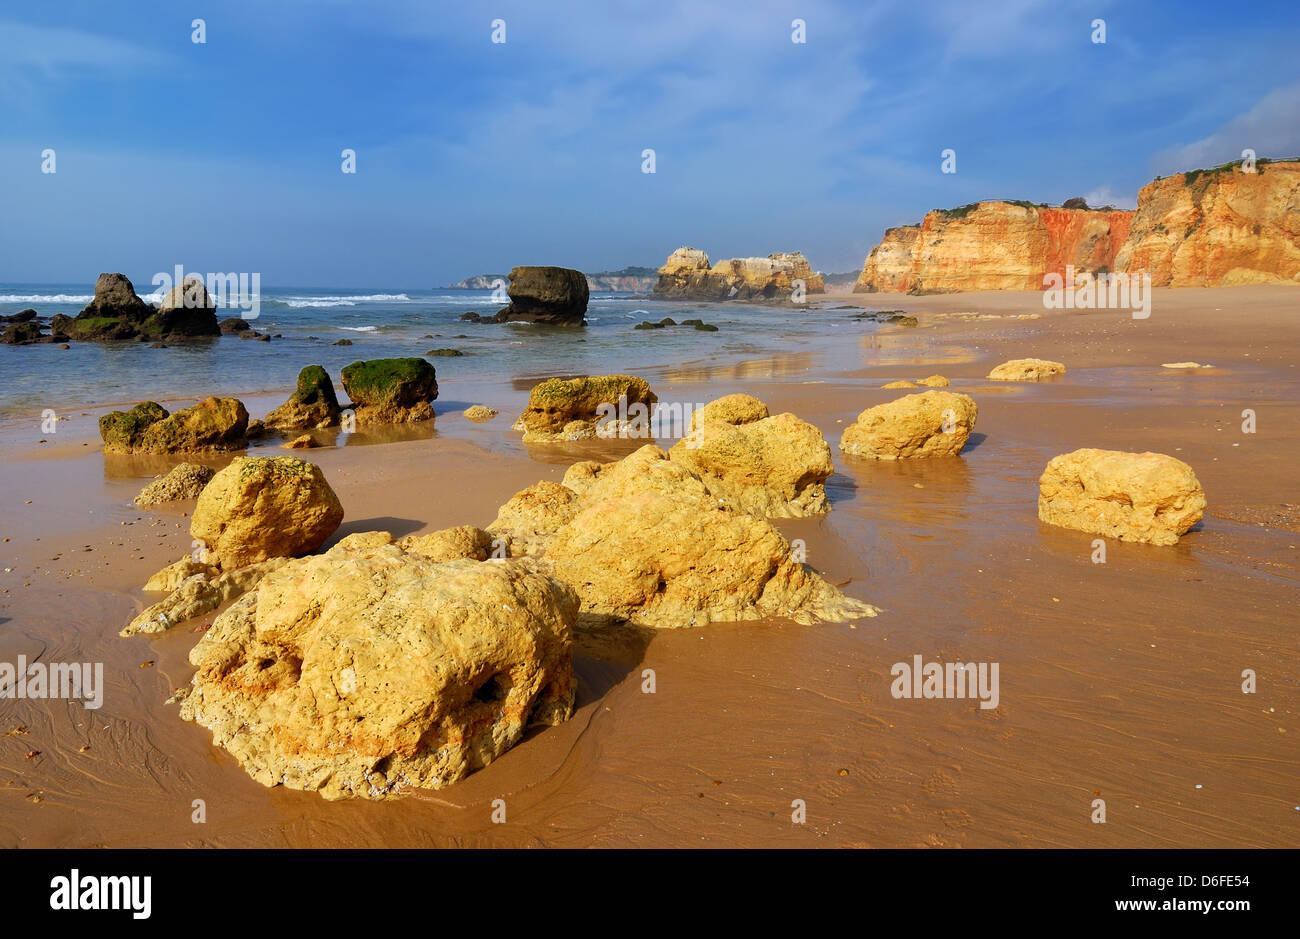 Praia da Rocha è la spiaggia e il centro abitato sull'Oceano Atlantico in Algarve, Portogallo meridionale. Foto Stock